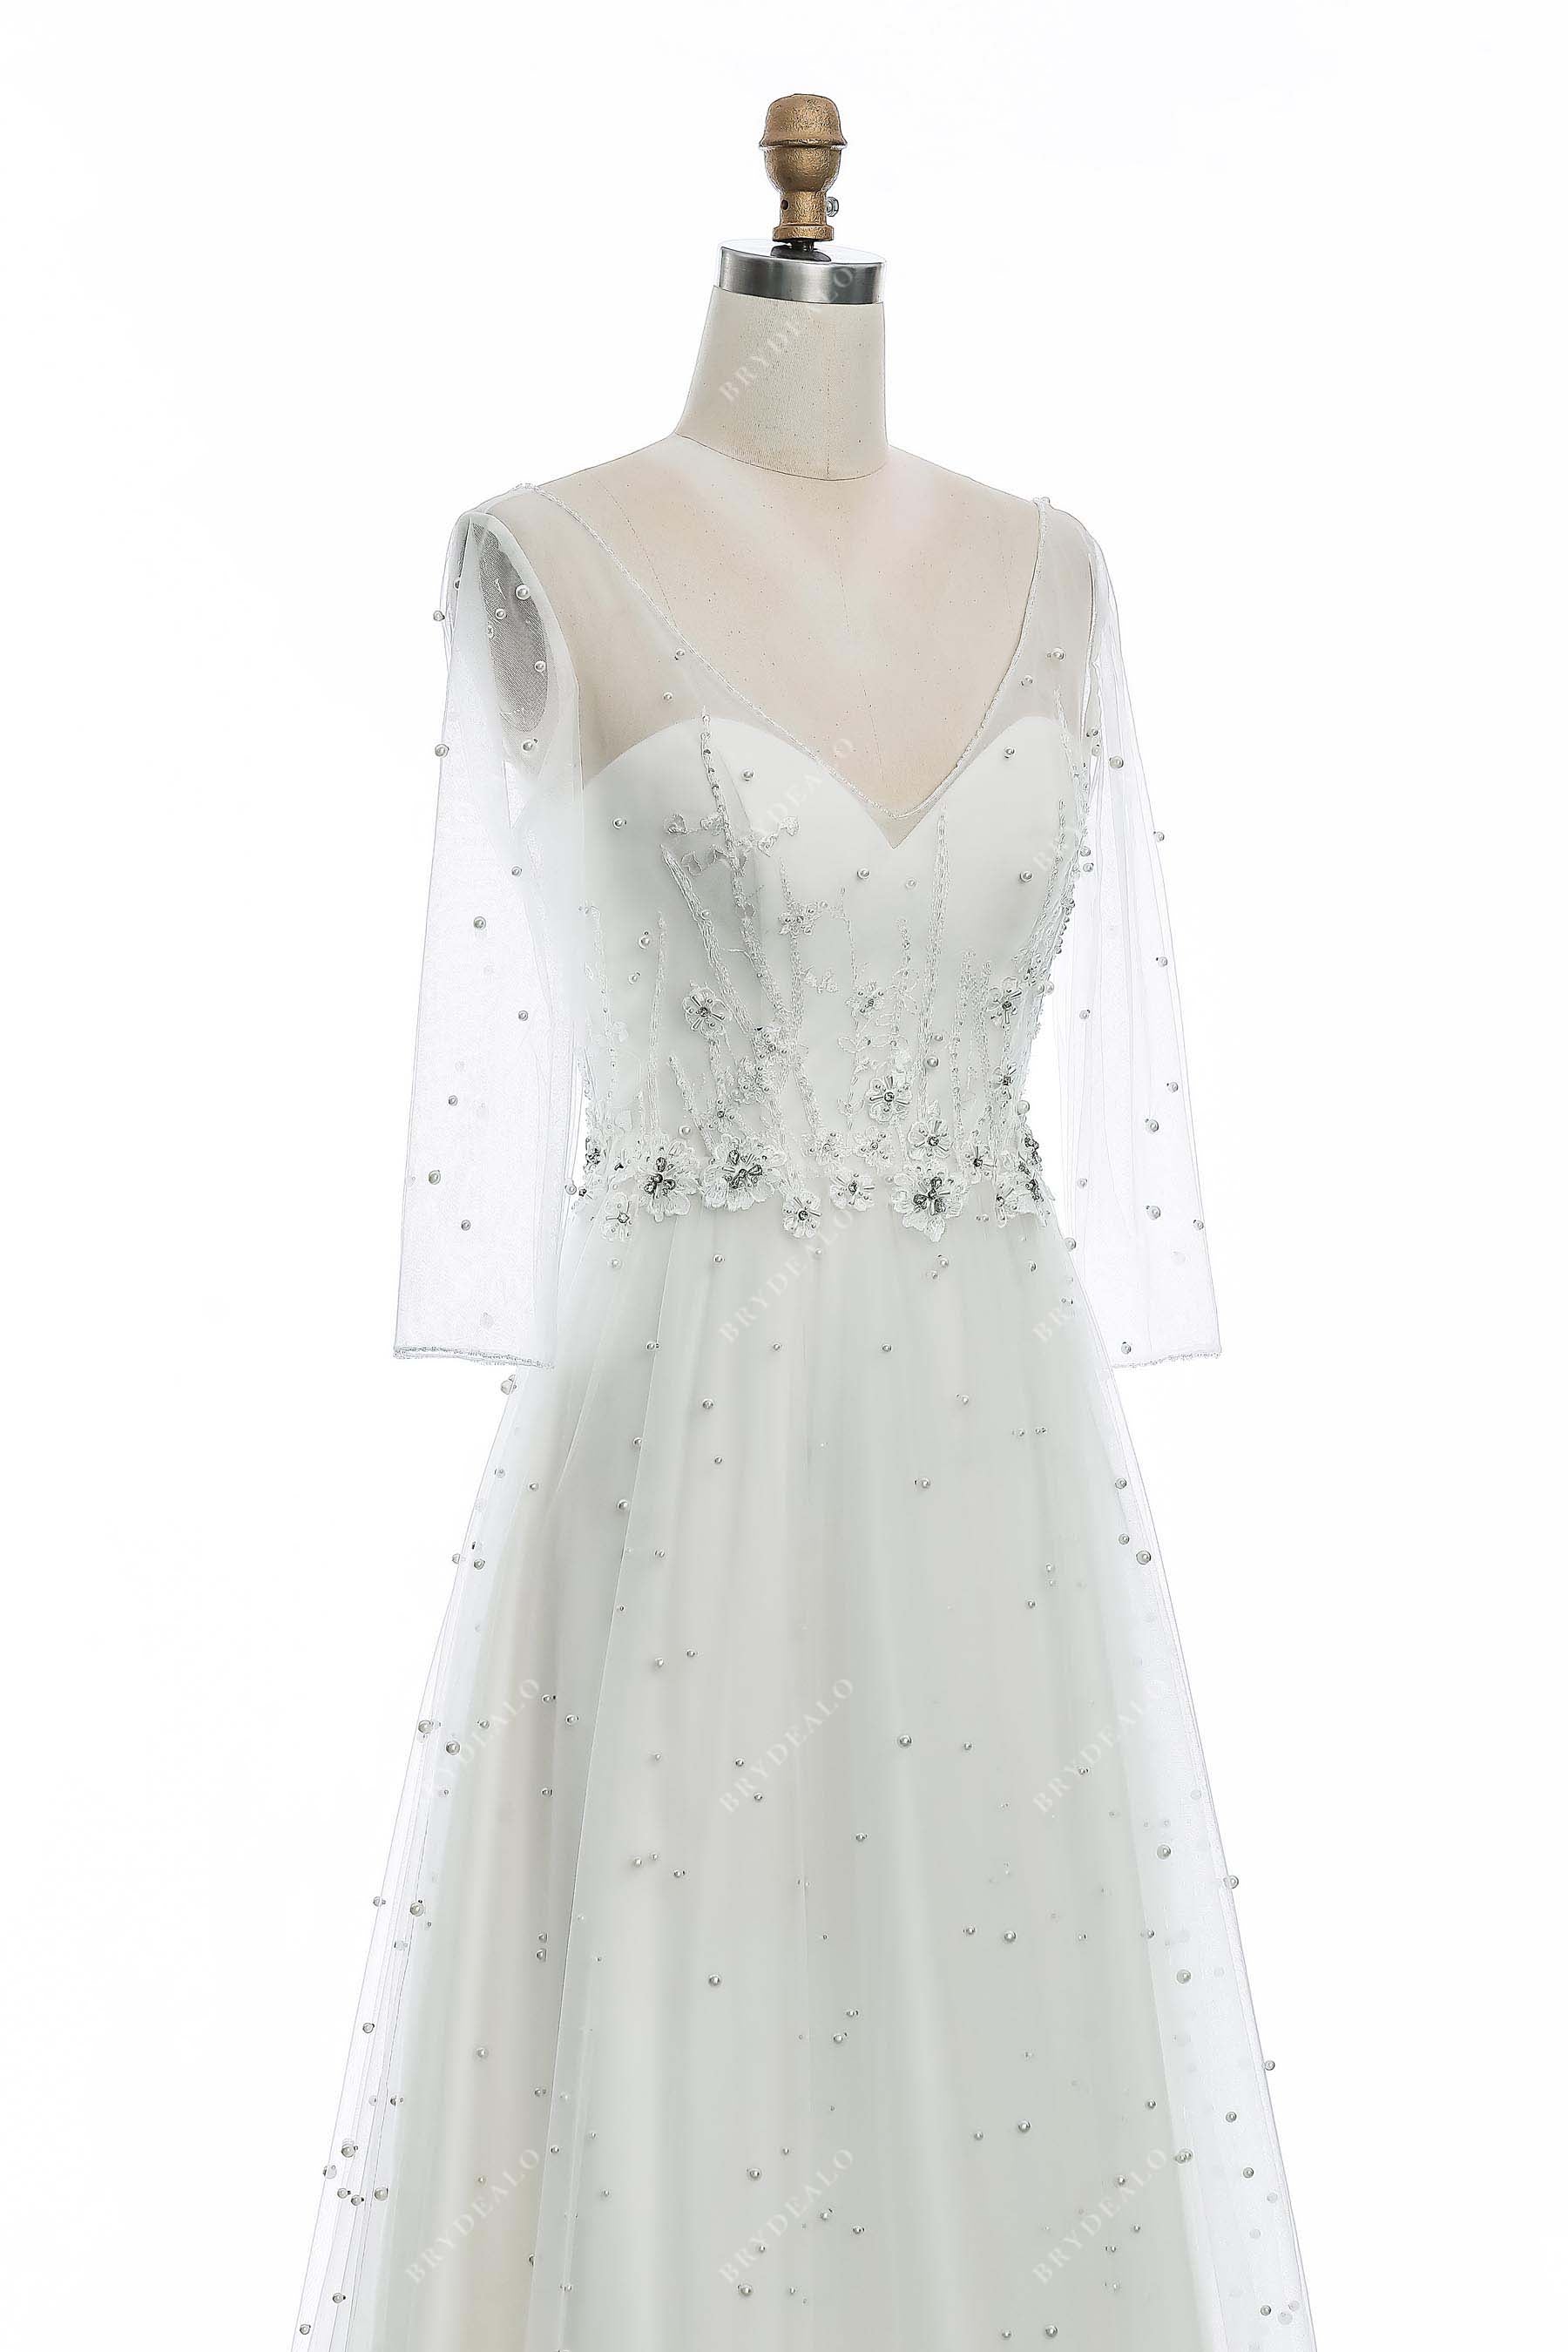 stylish illusion neck sheer sleeves bridal dress